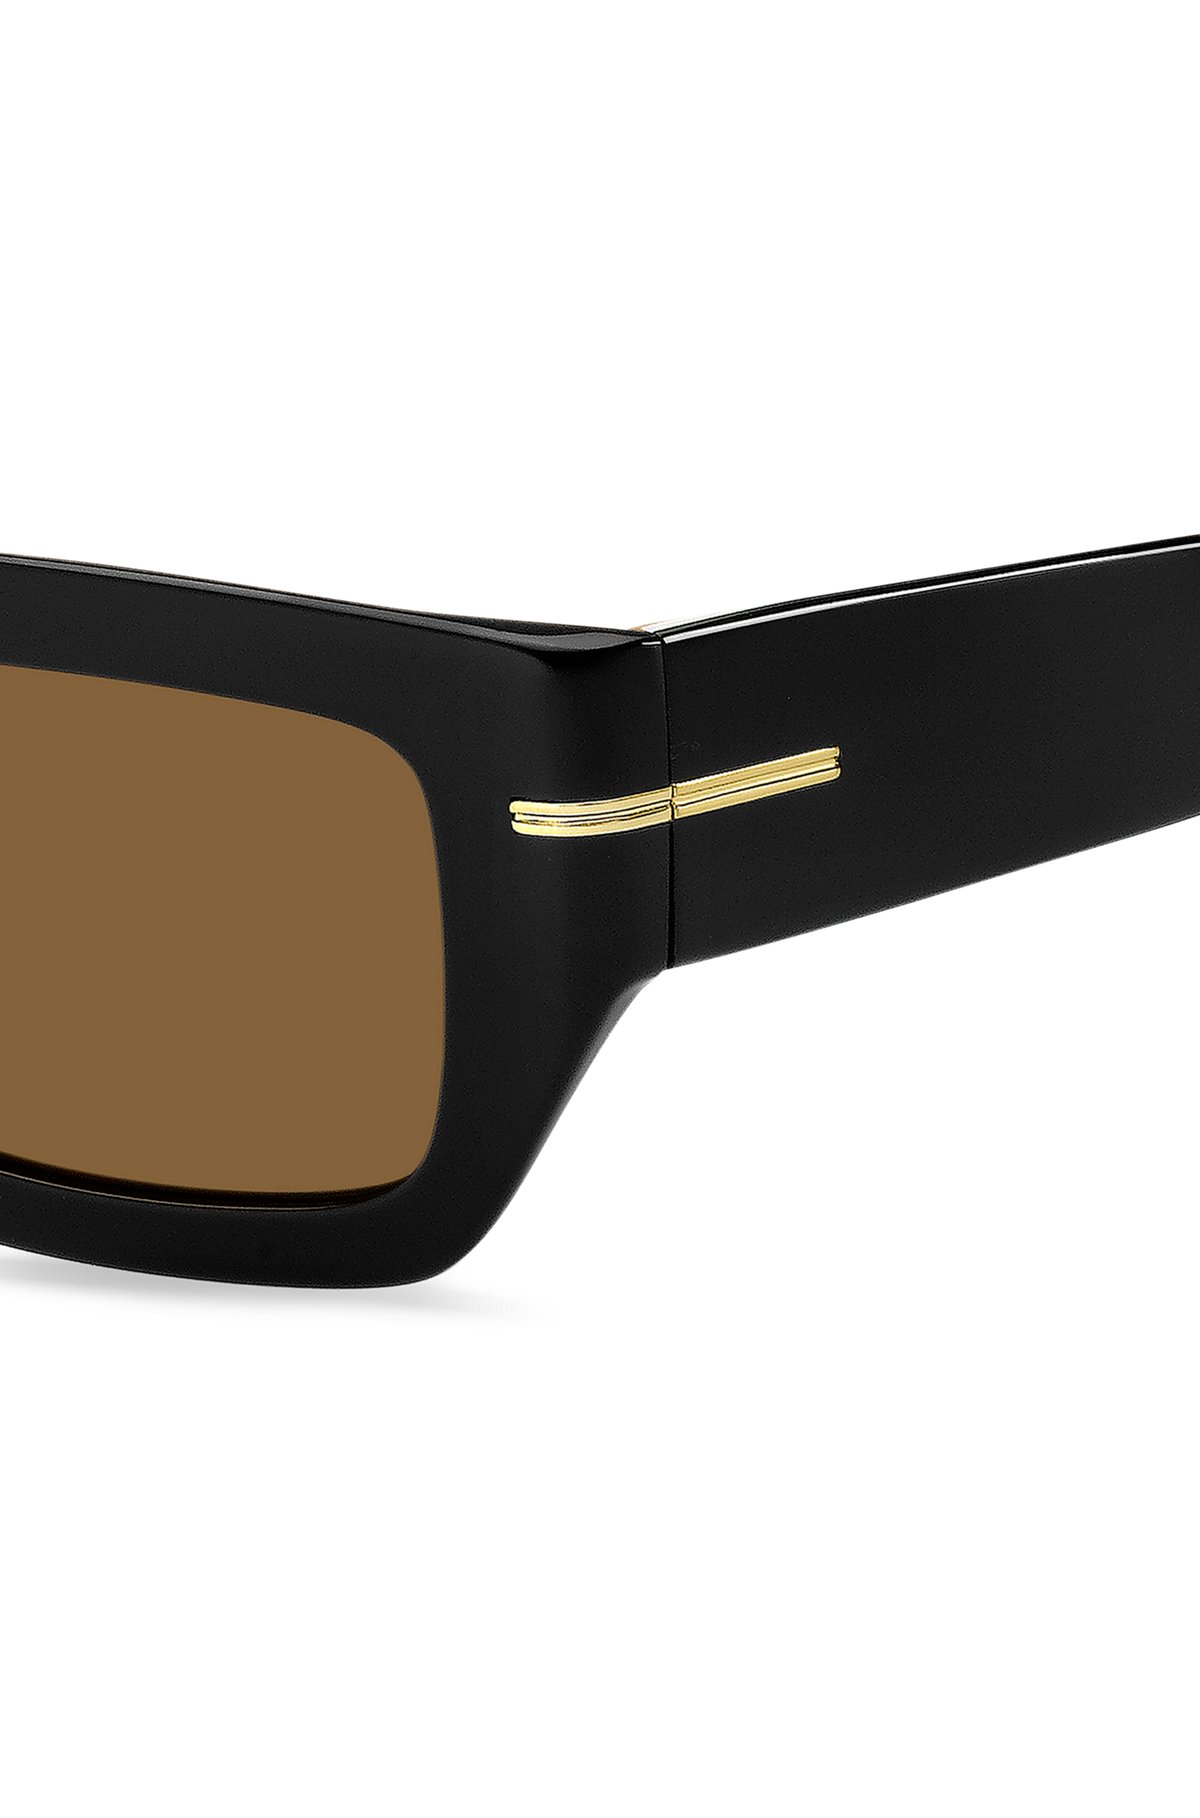 Occhiali da sole in acetato nero con dettaglio color oro tipico del marchio, Nero